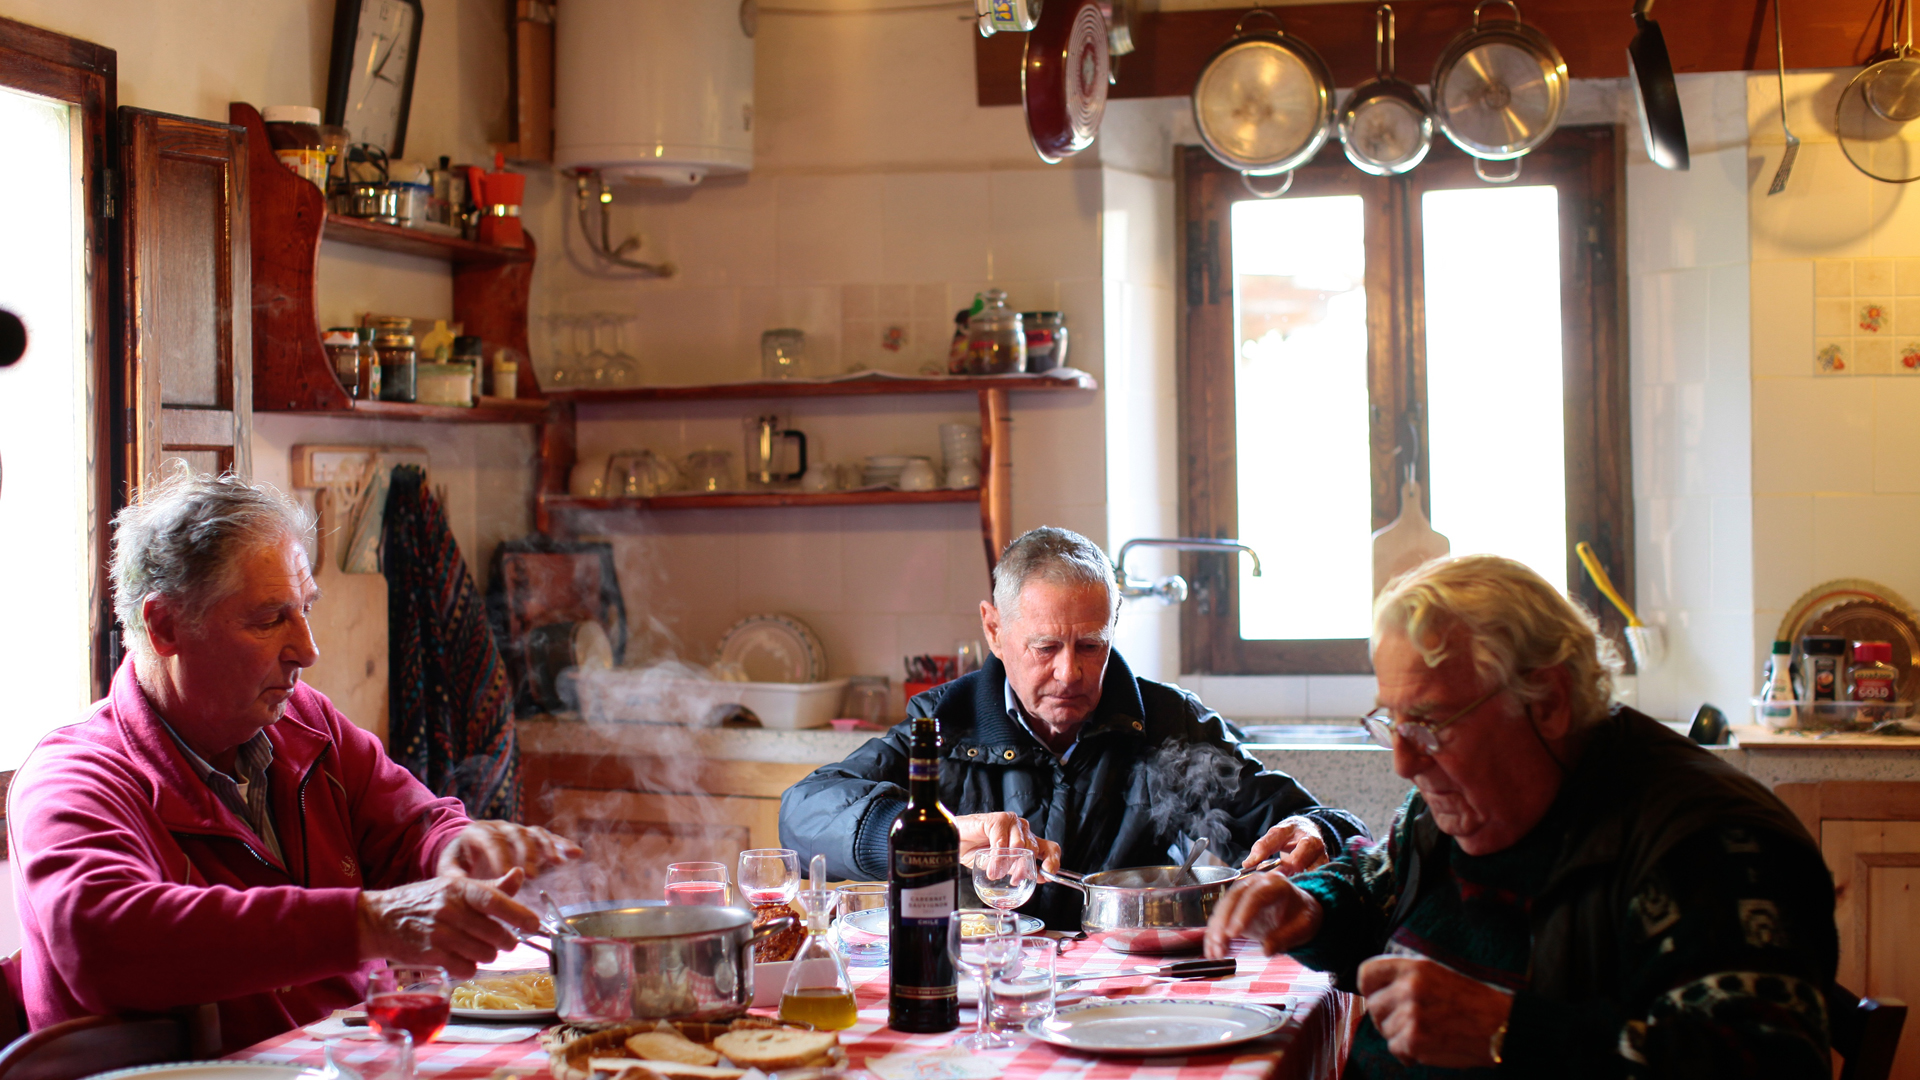 Bubi, Andrea und Meme beim Abendessen in ihrem Feriendomizil - das Bild verdeutlicht Gegensätze: Vor 70 Jahren litten sie in der Verfolgung Hunger, heute genießen sie italienisches Essen.